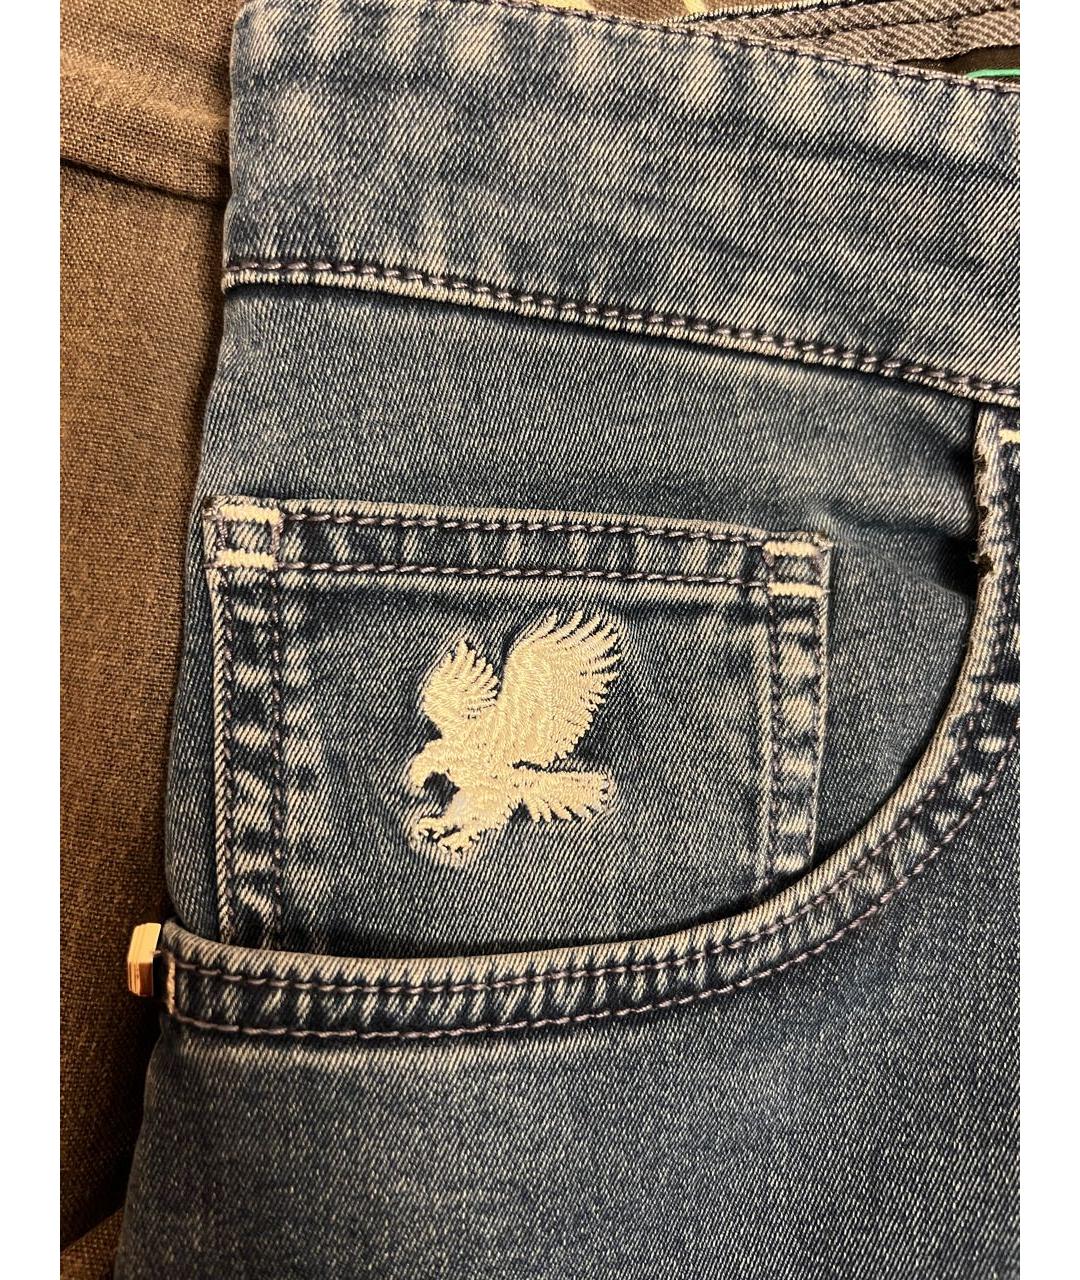 STEFANO RICCI Синие хлопко-полиэстеровые прямые джинсы, фото 4